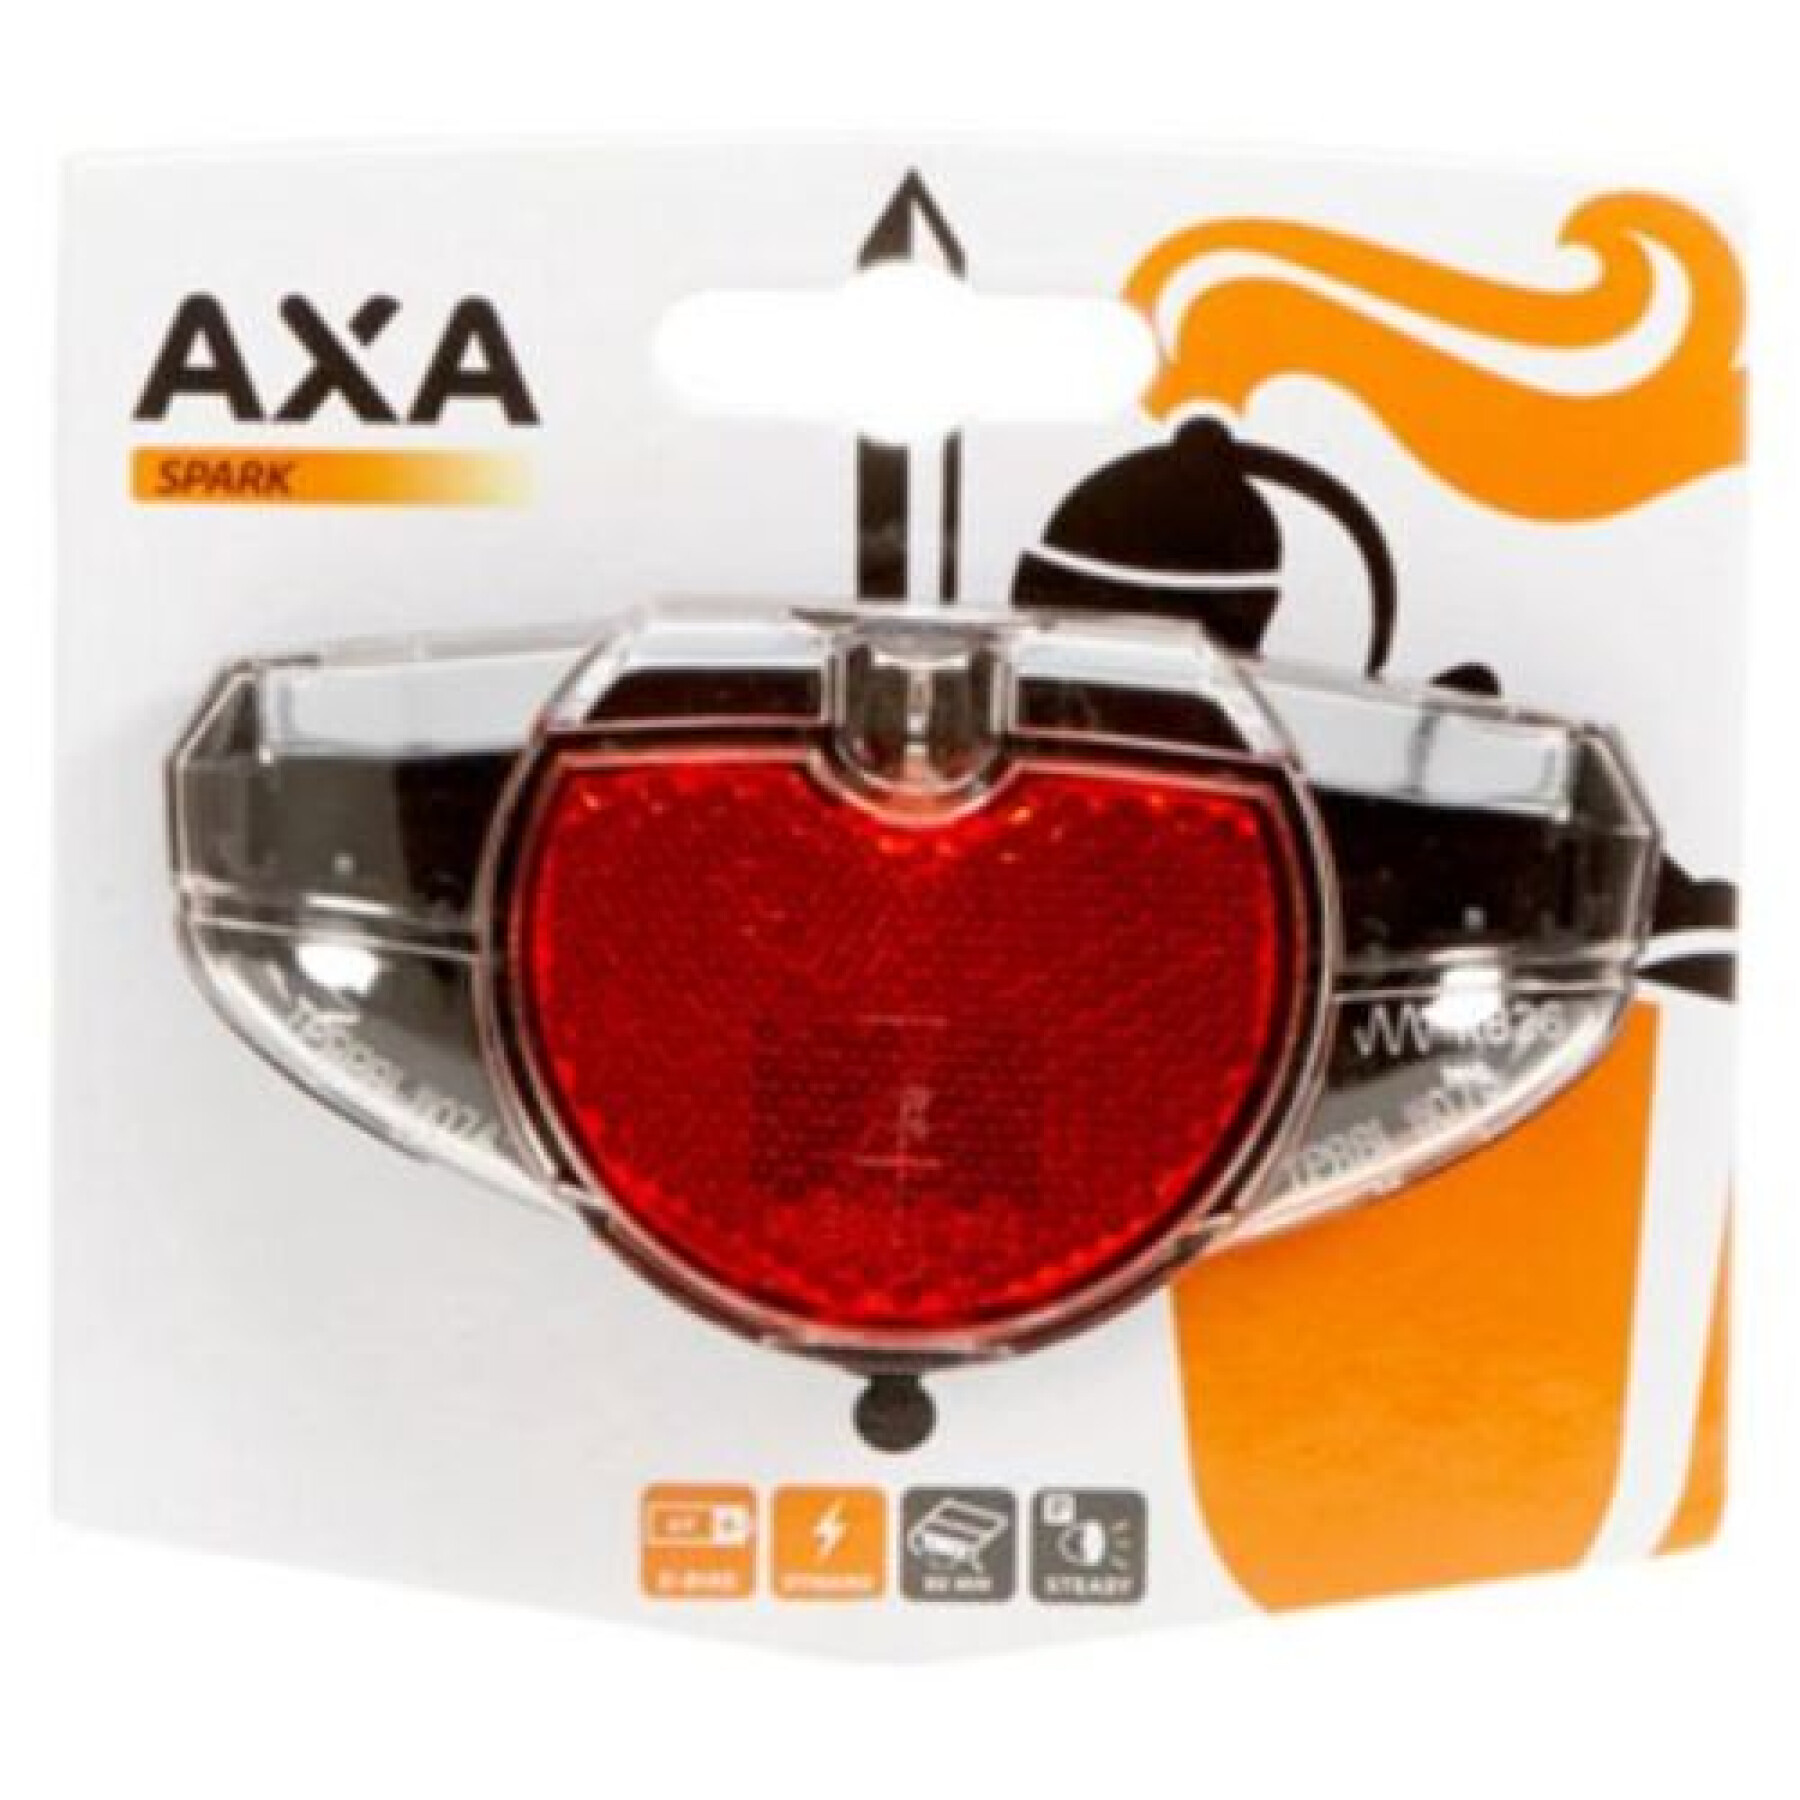 Dynamo-Rücklicht für Gepäckträger Axa Spark steady 80mm